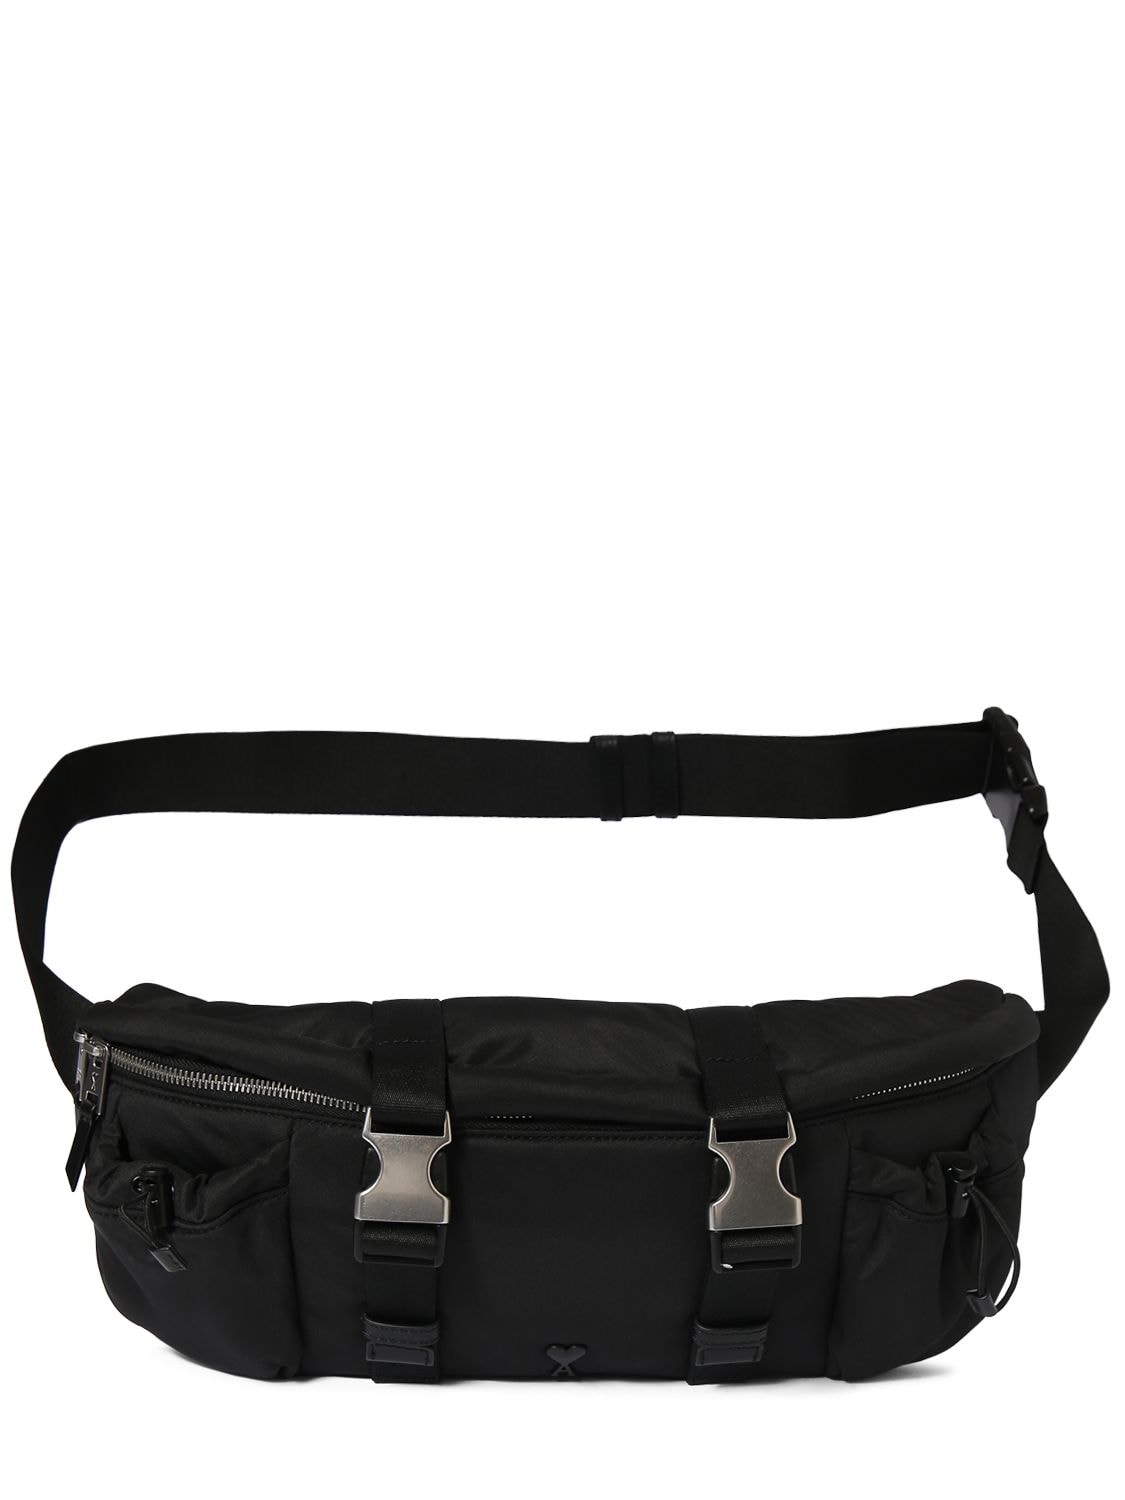 Image of Adc Belt Bag